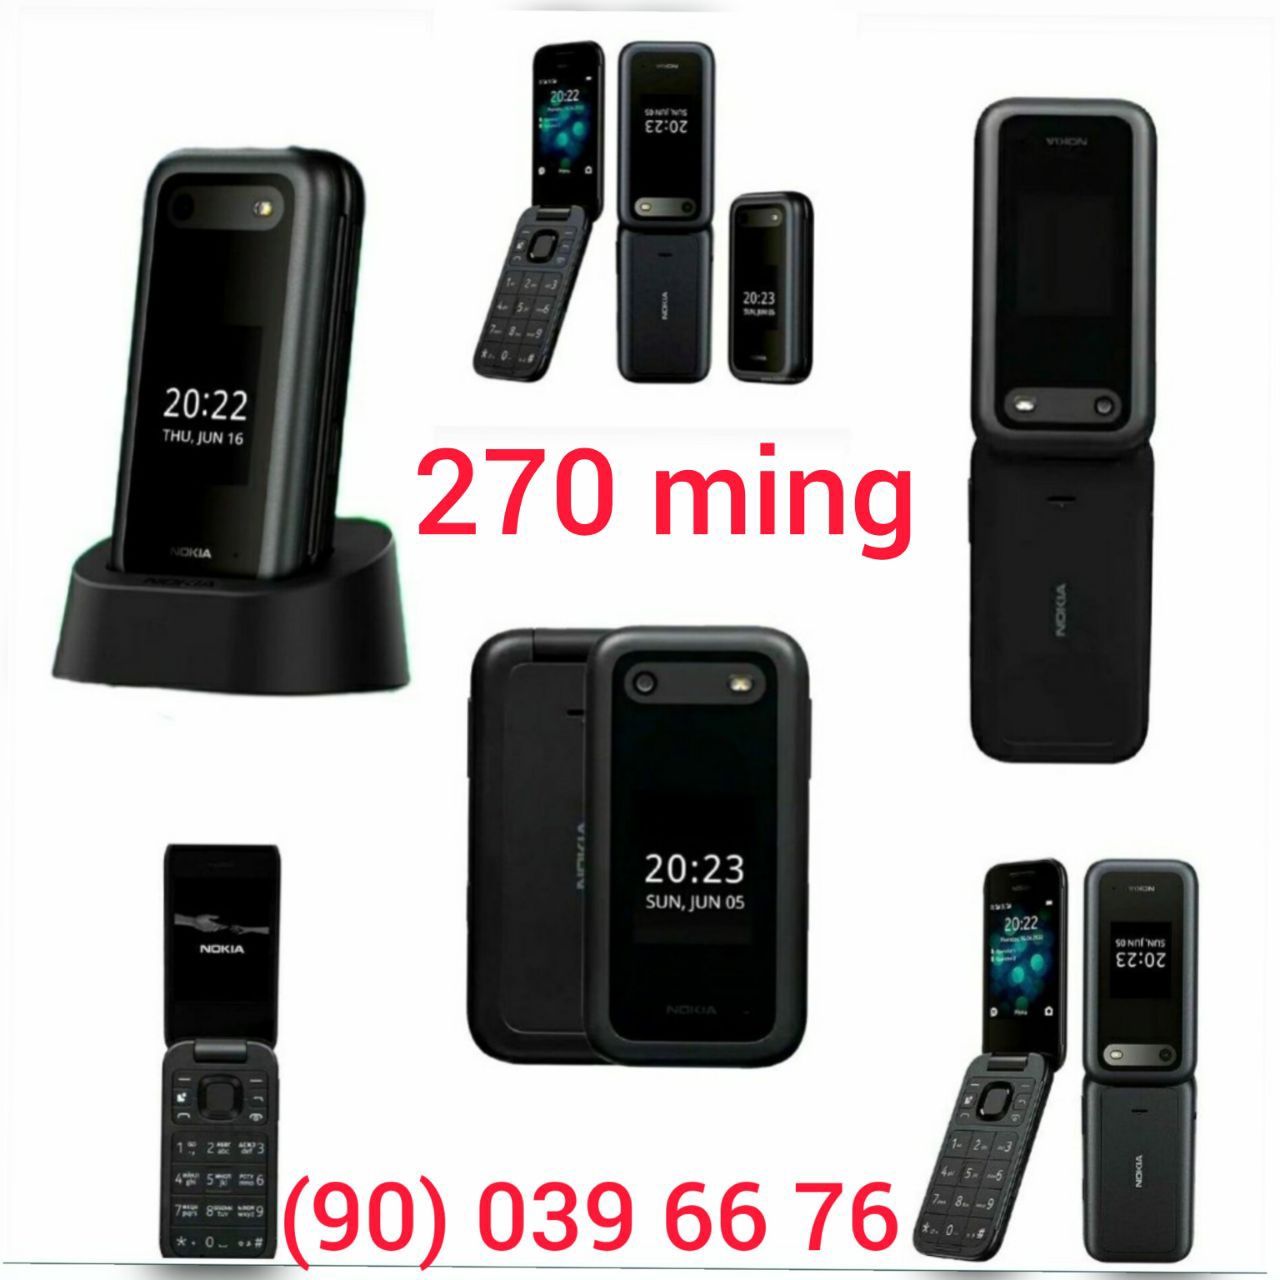 Nokia 2720 flip, Nokia 2660 flip, Gusto 3 (B311V) Samsung, GSM, YENGI.